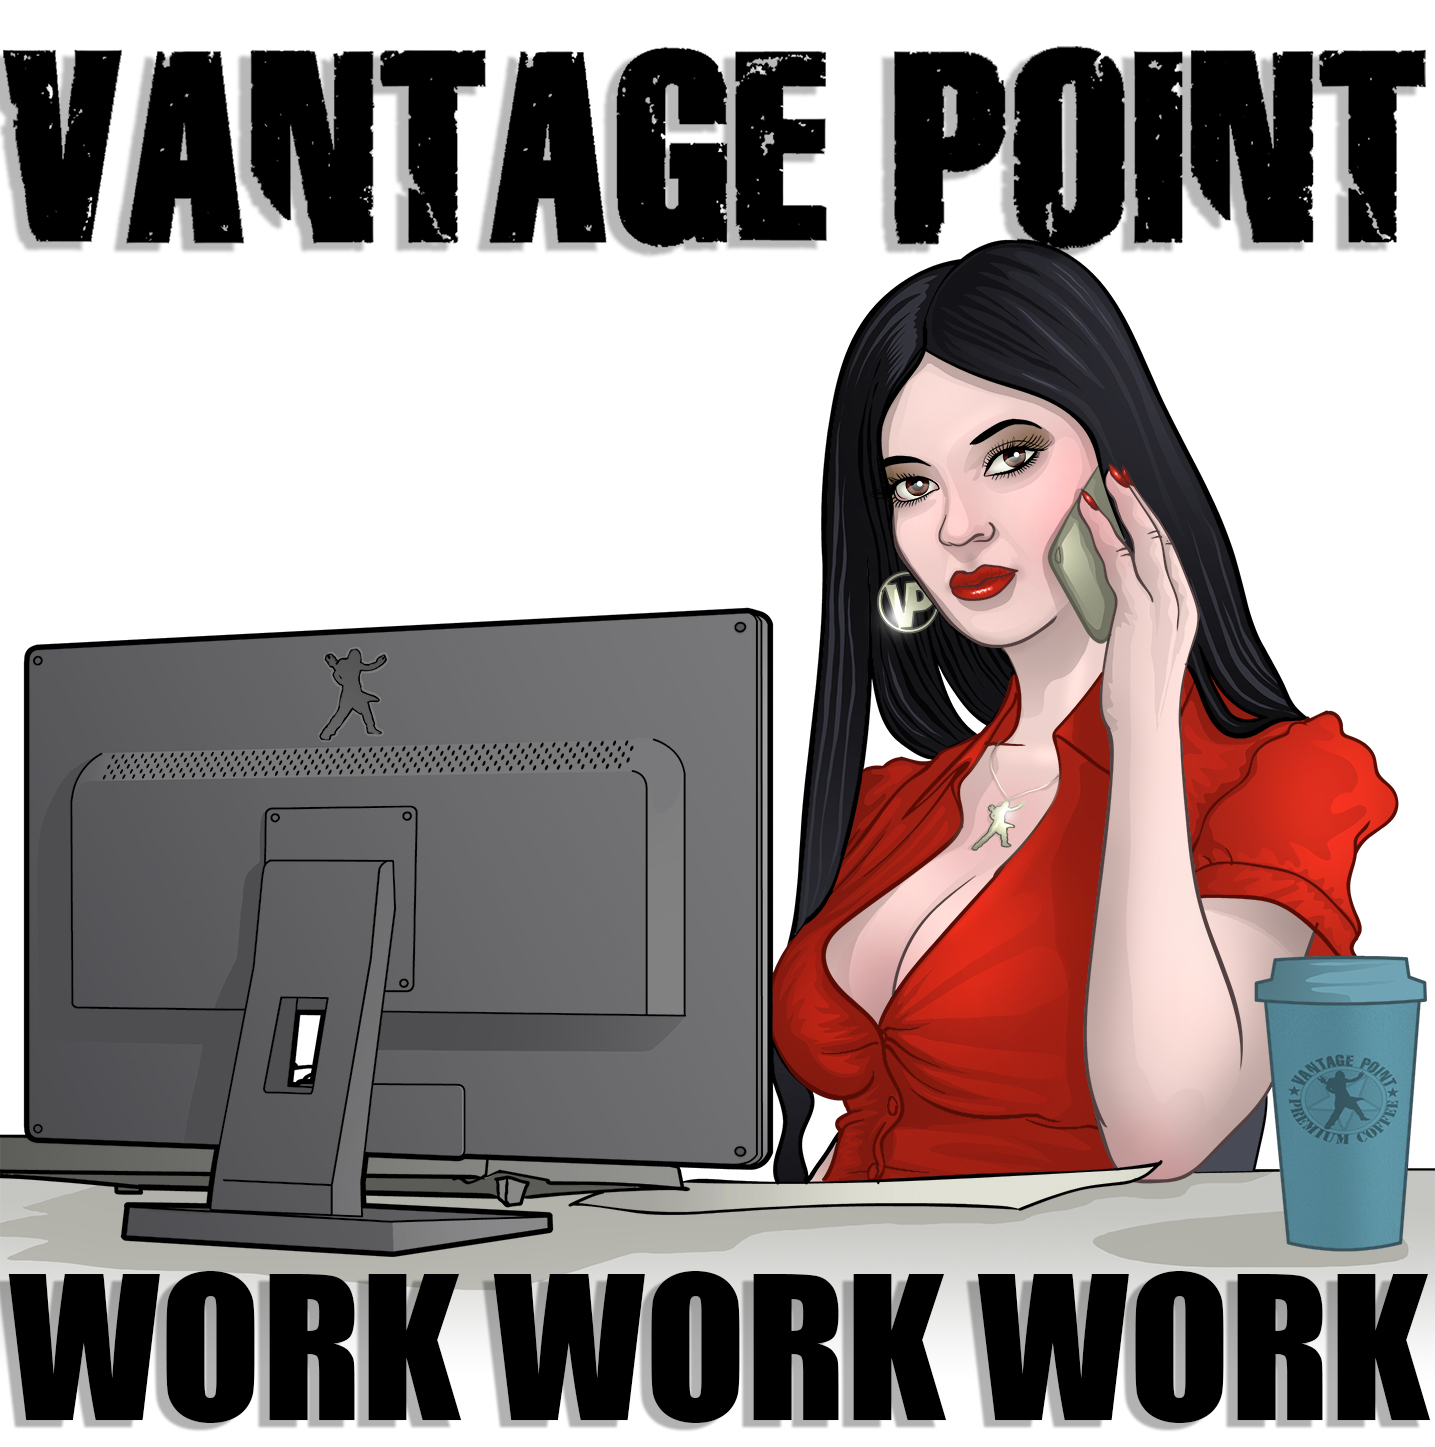 VANTAGE POINT - Work Work Work cover 